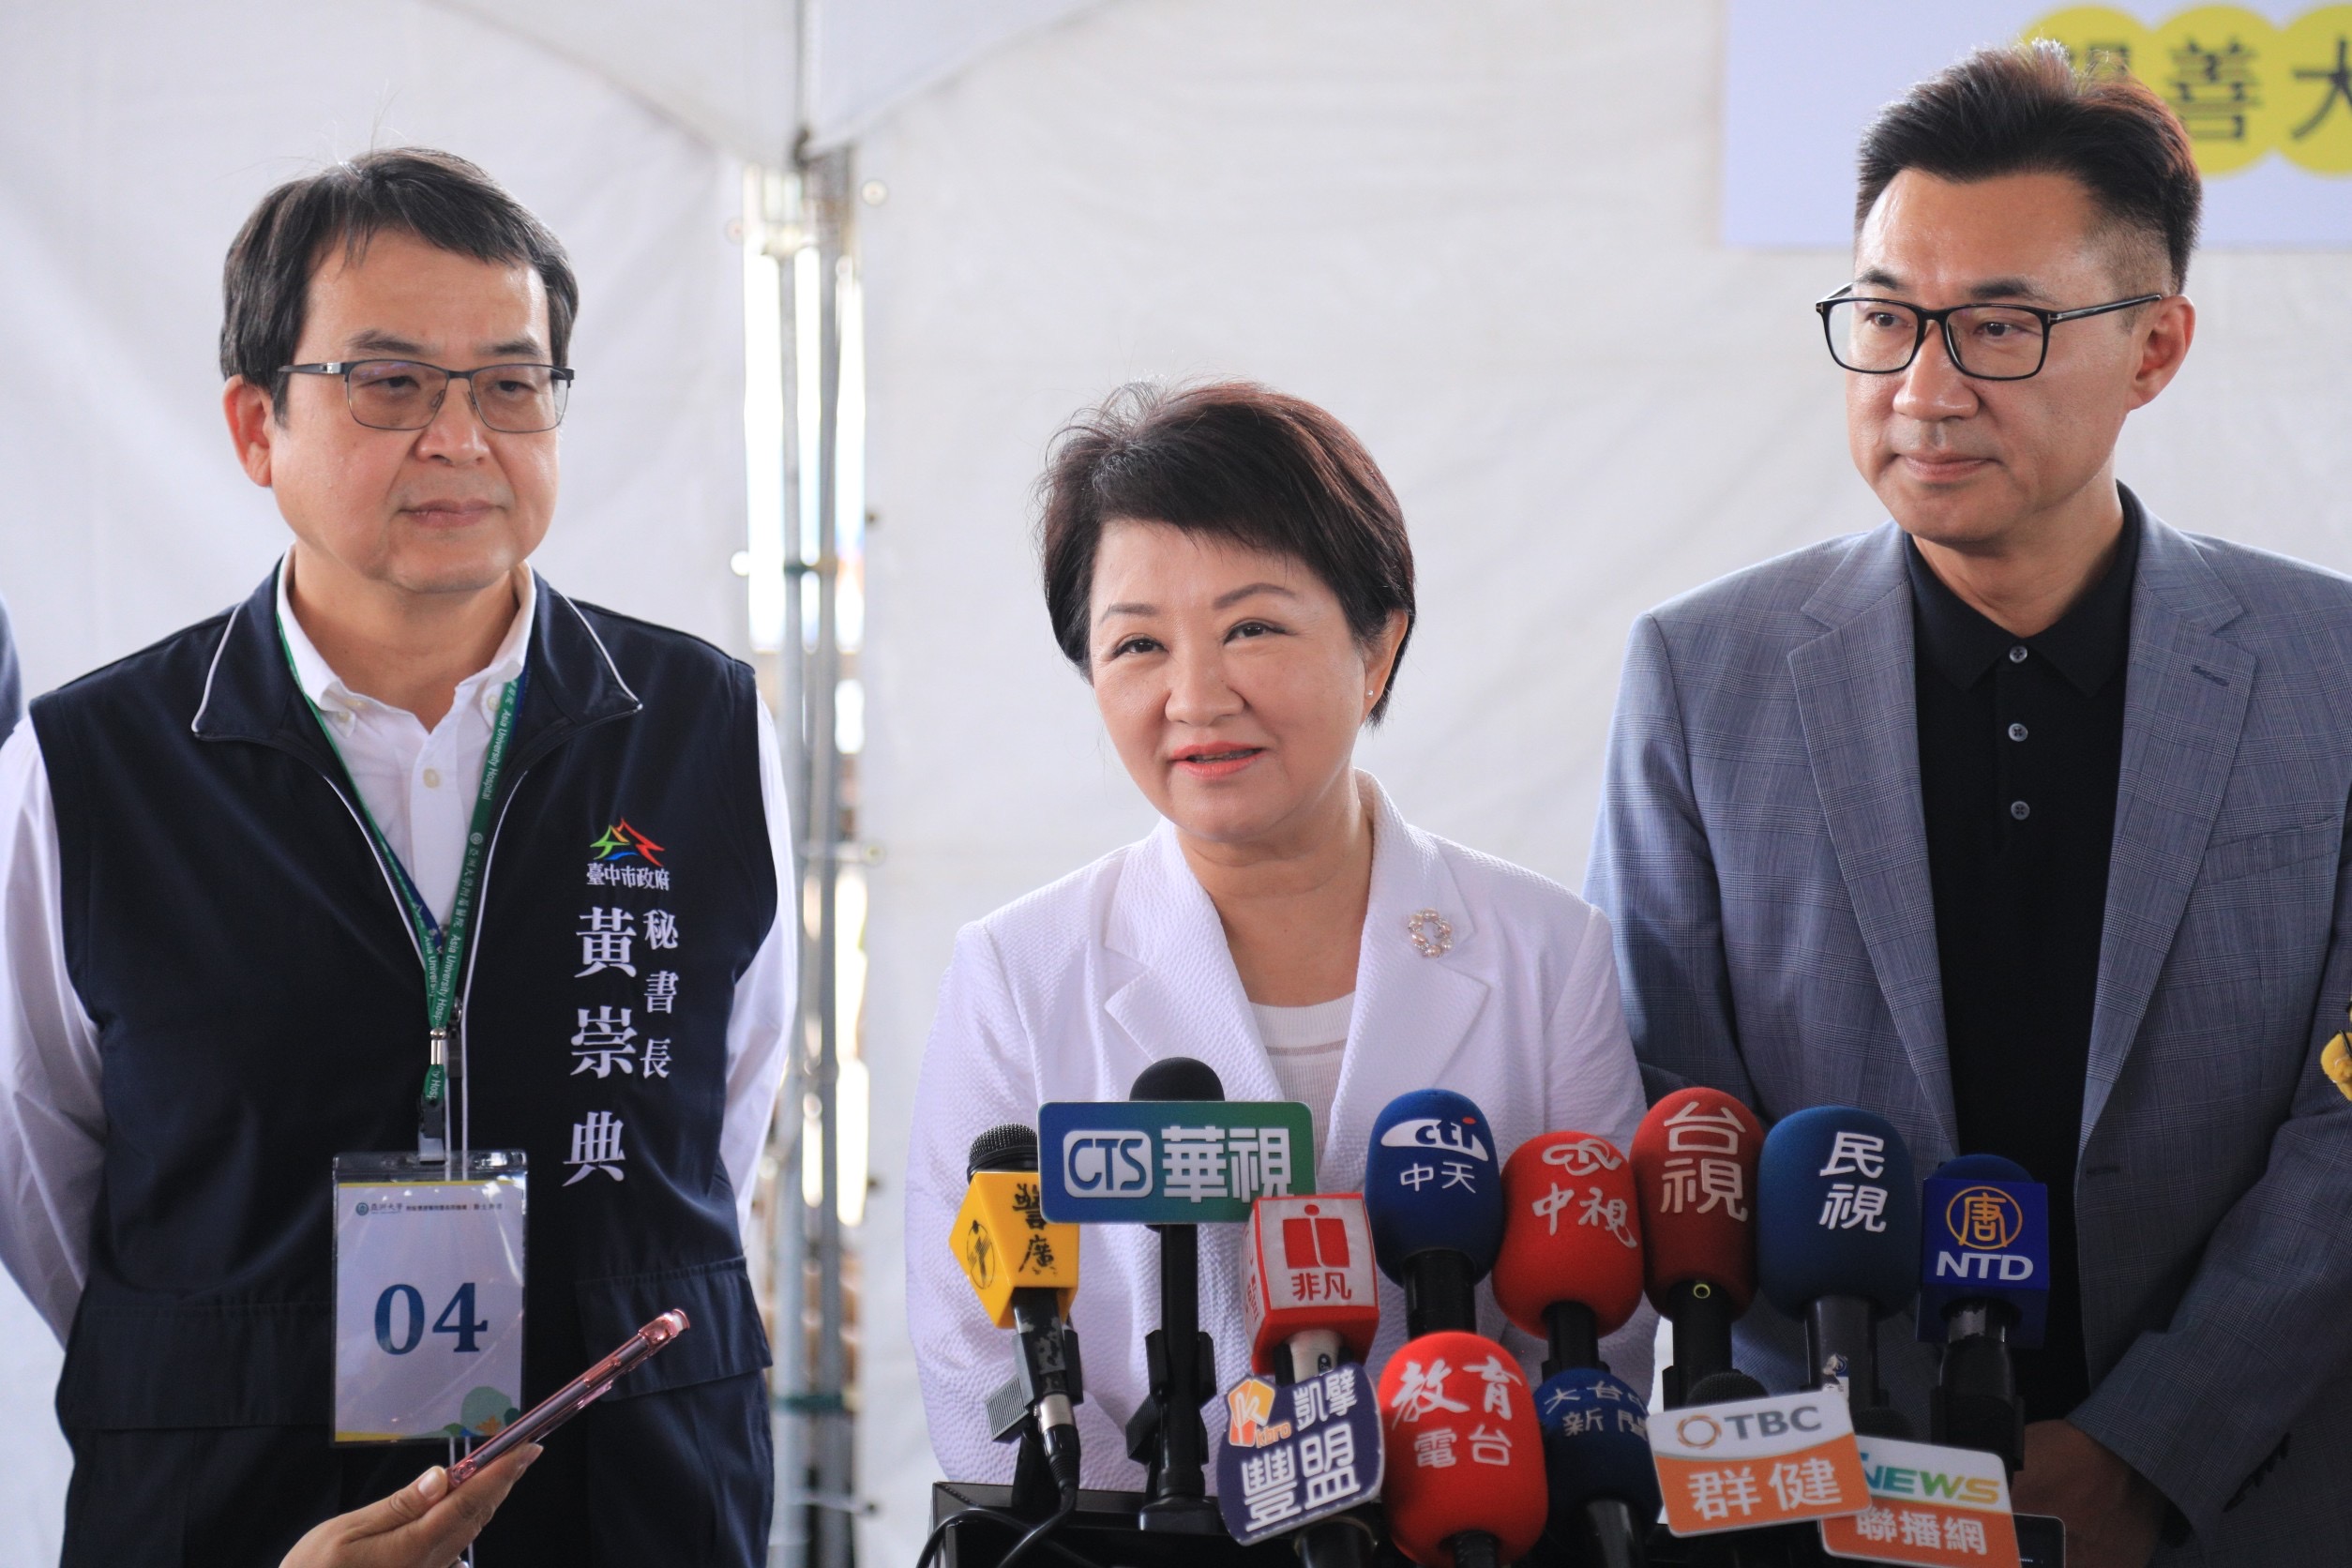 台中市长卢秀燕受访表示，520总统就职典礼是否能到场，因为总质询必须备询，议会同意才能成行。记者陈秋云/摄影